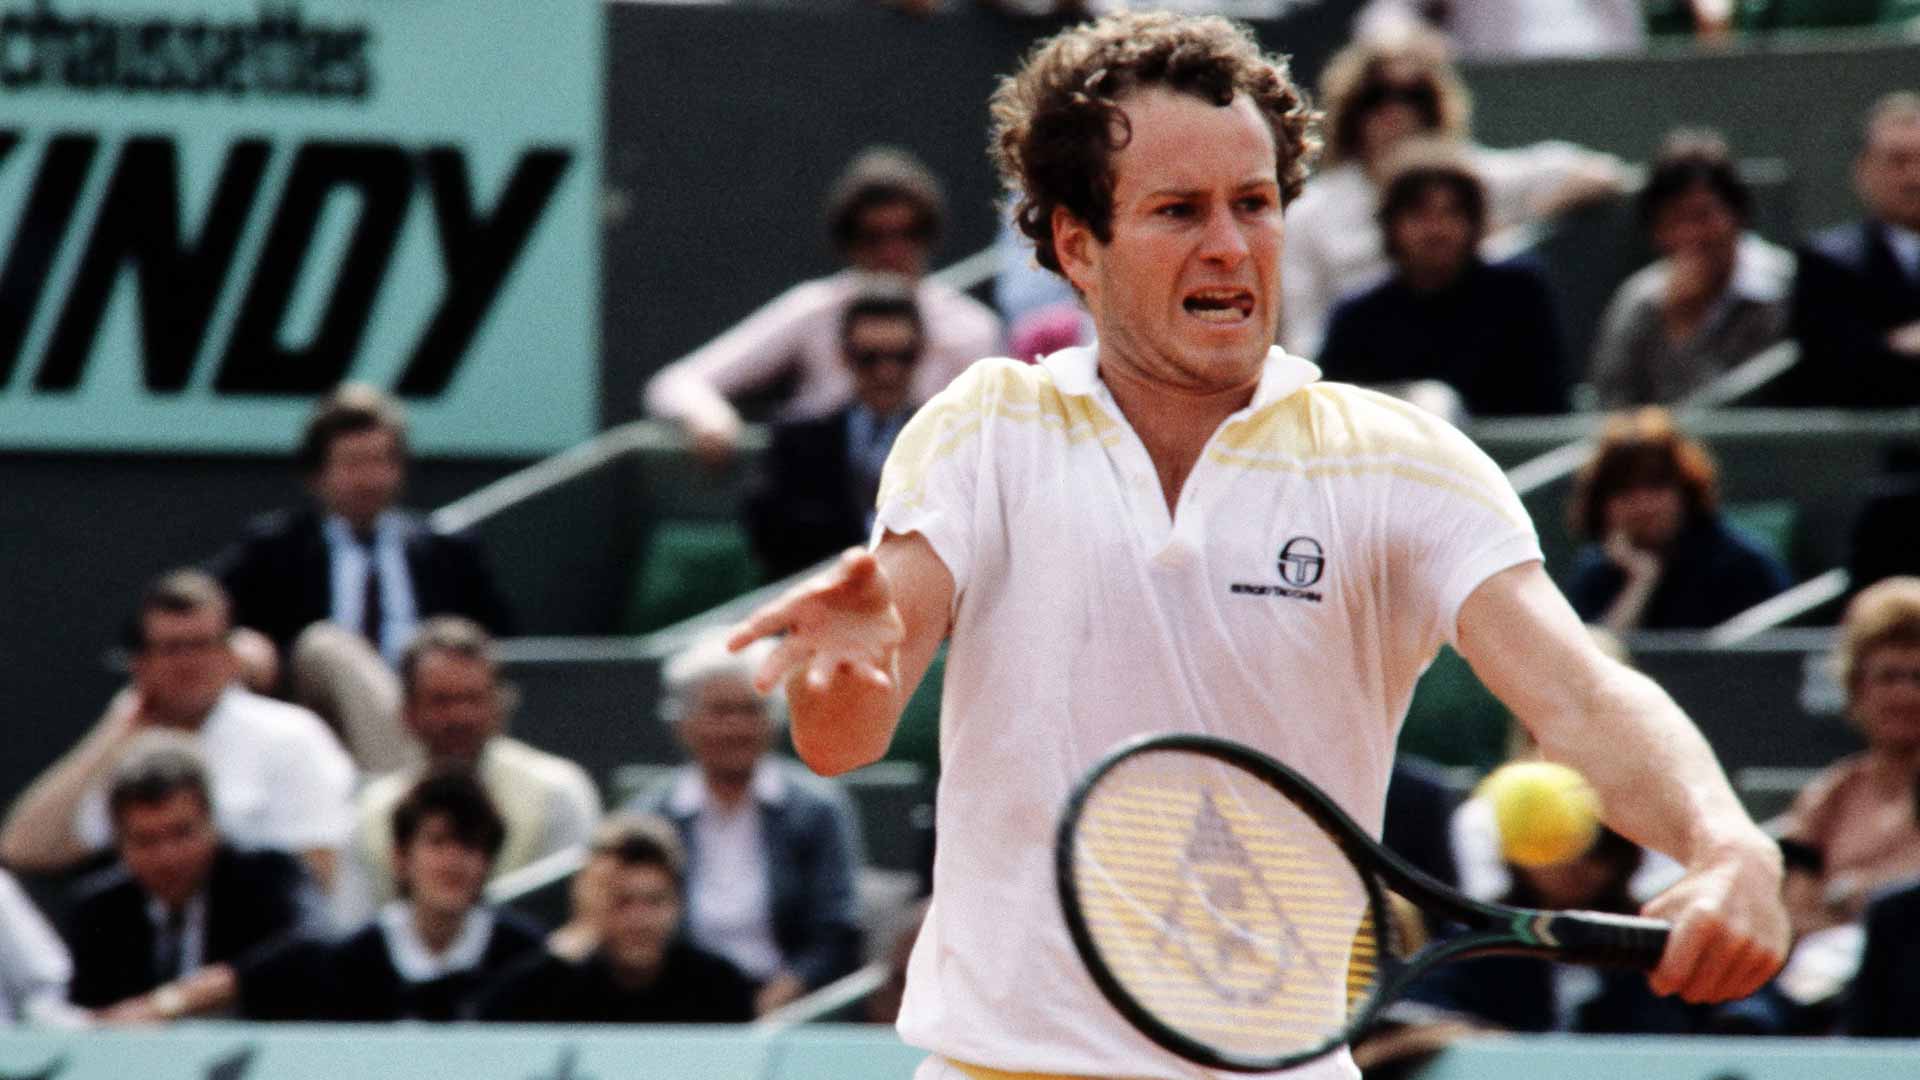 John McEnroe in action at Roland Garros in 1983.